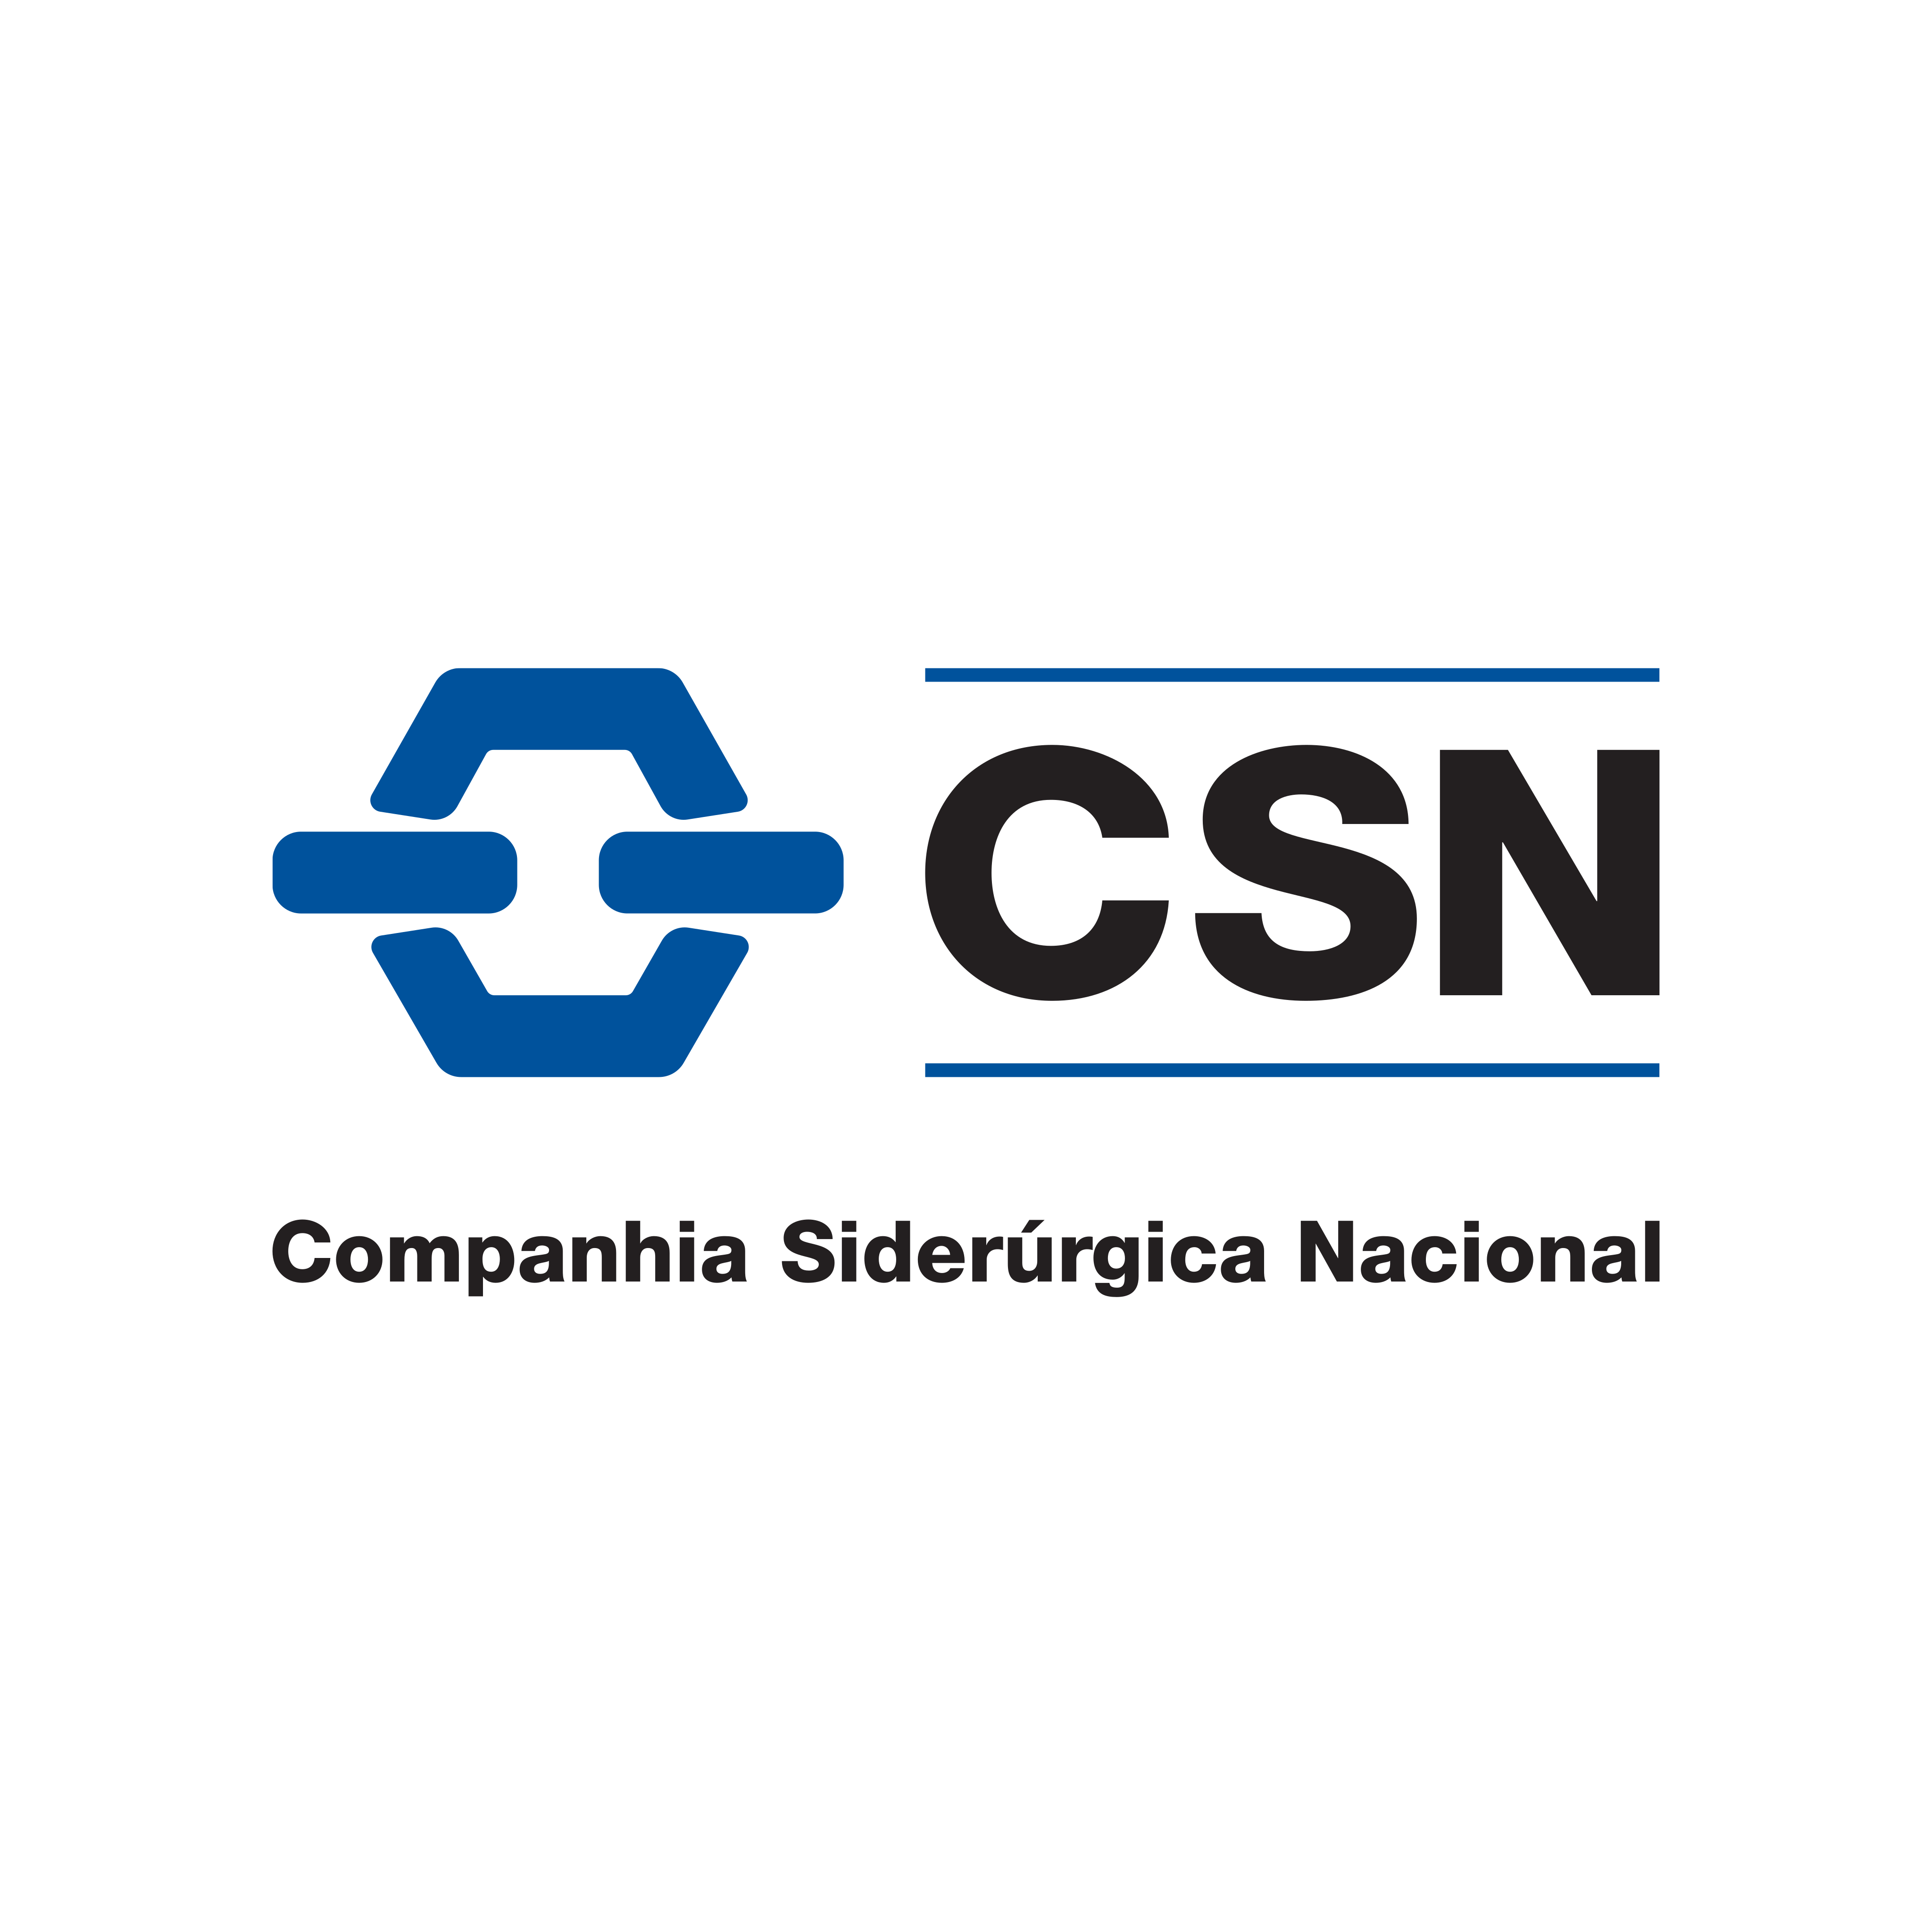 csn-logo-0